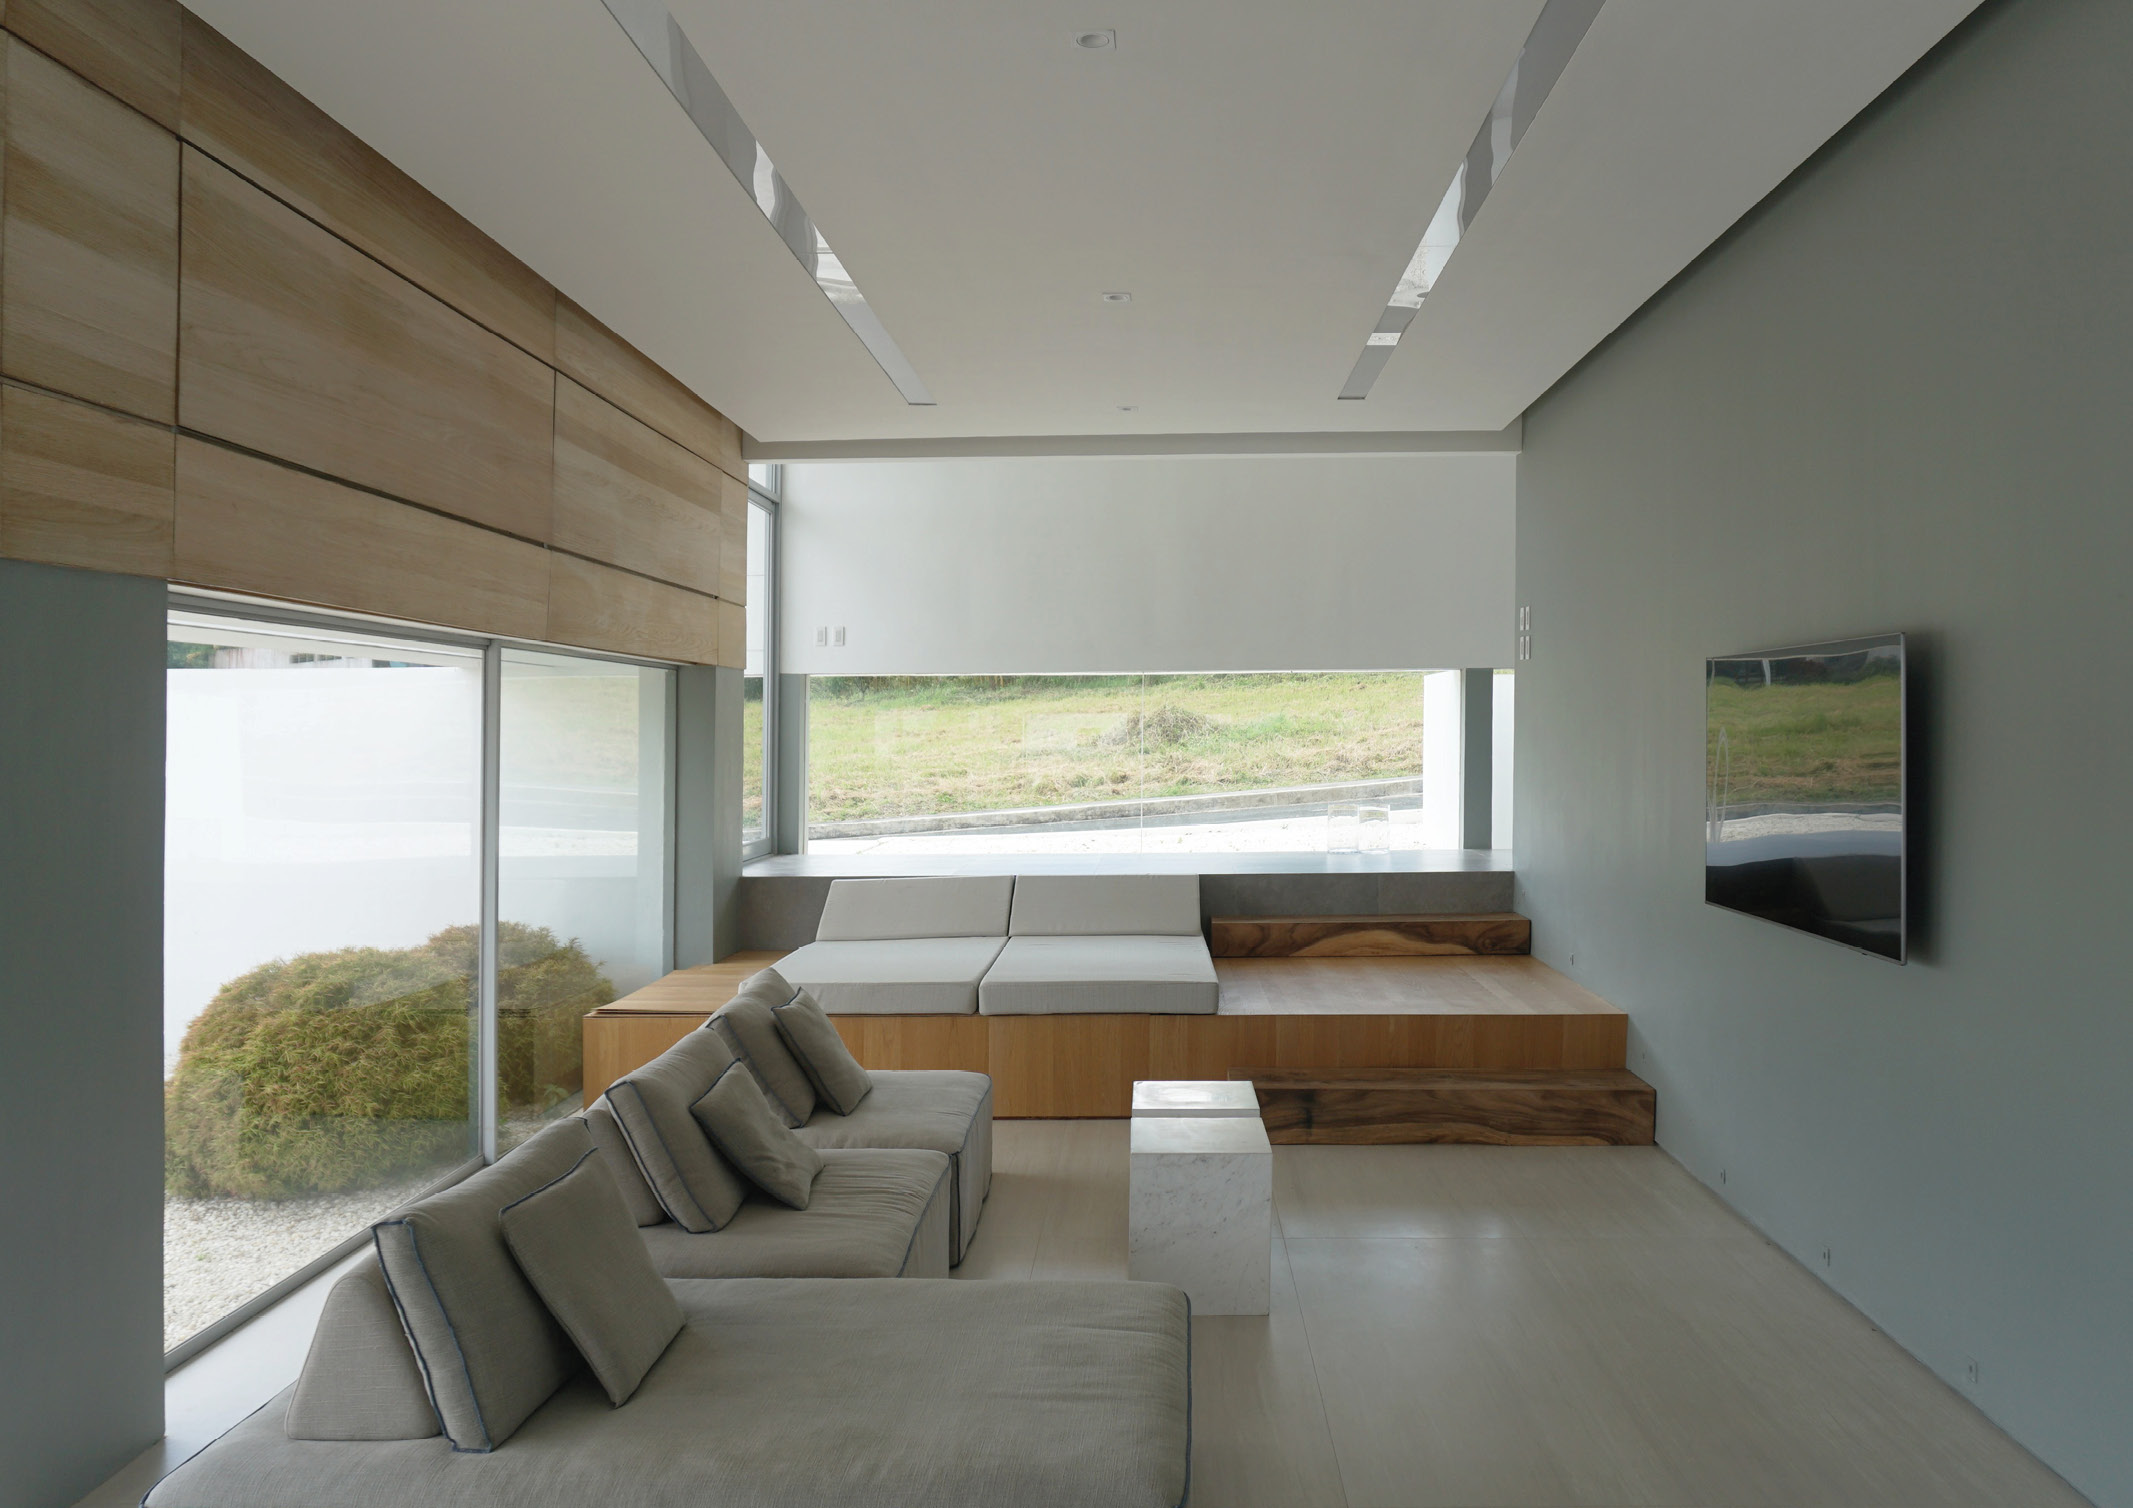 Panorama House Interior by Jim Caumeron minimalism